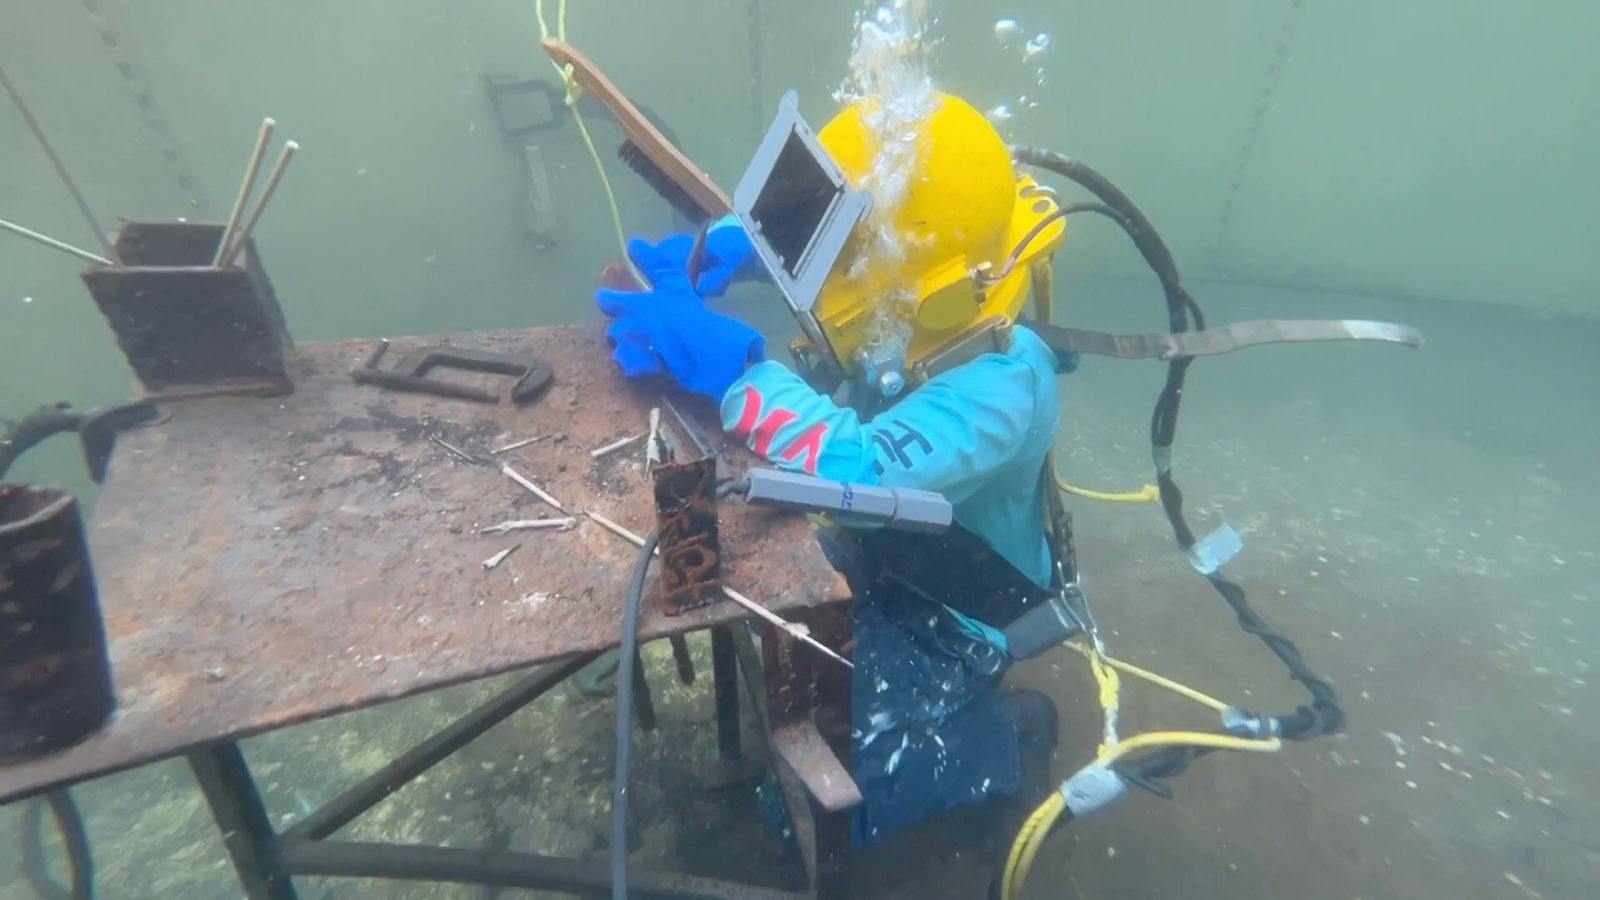 Apprenticeship Academy alumnus begins career in underwater welding